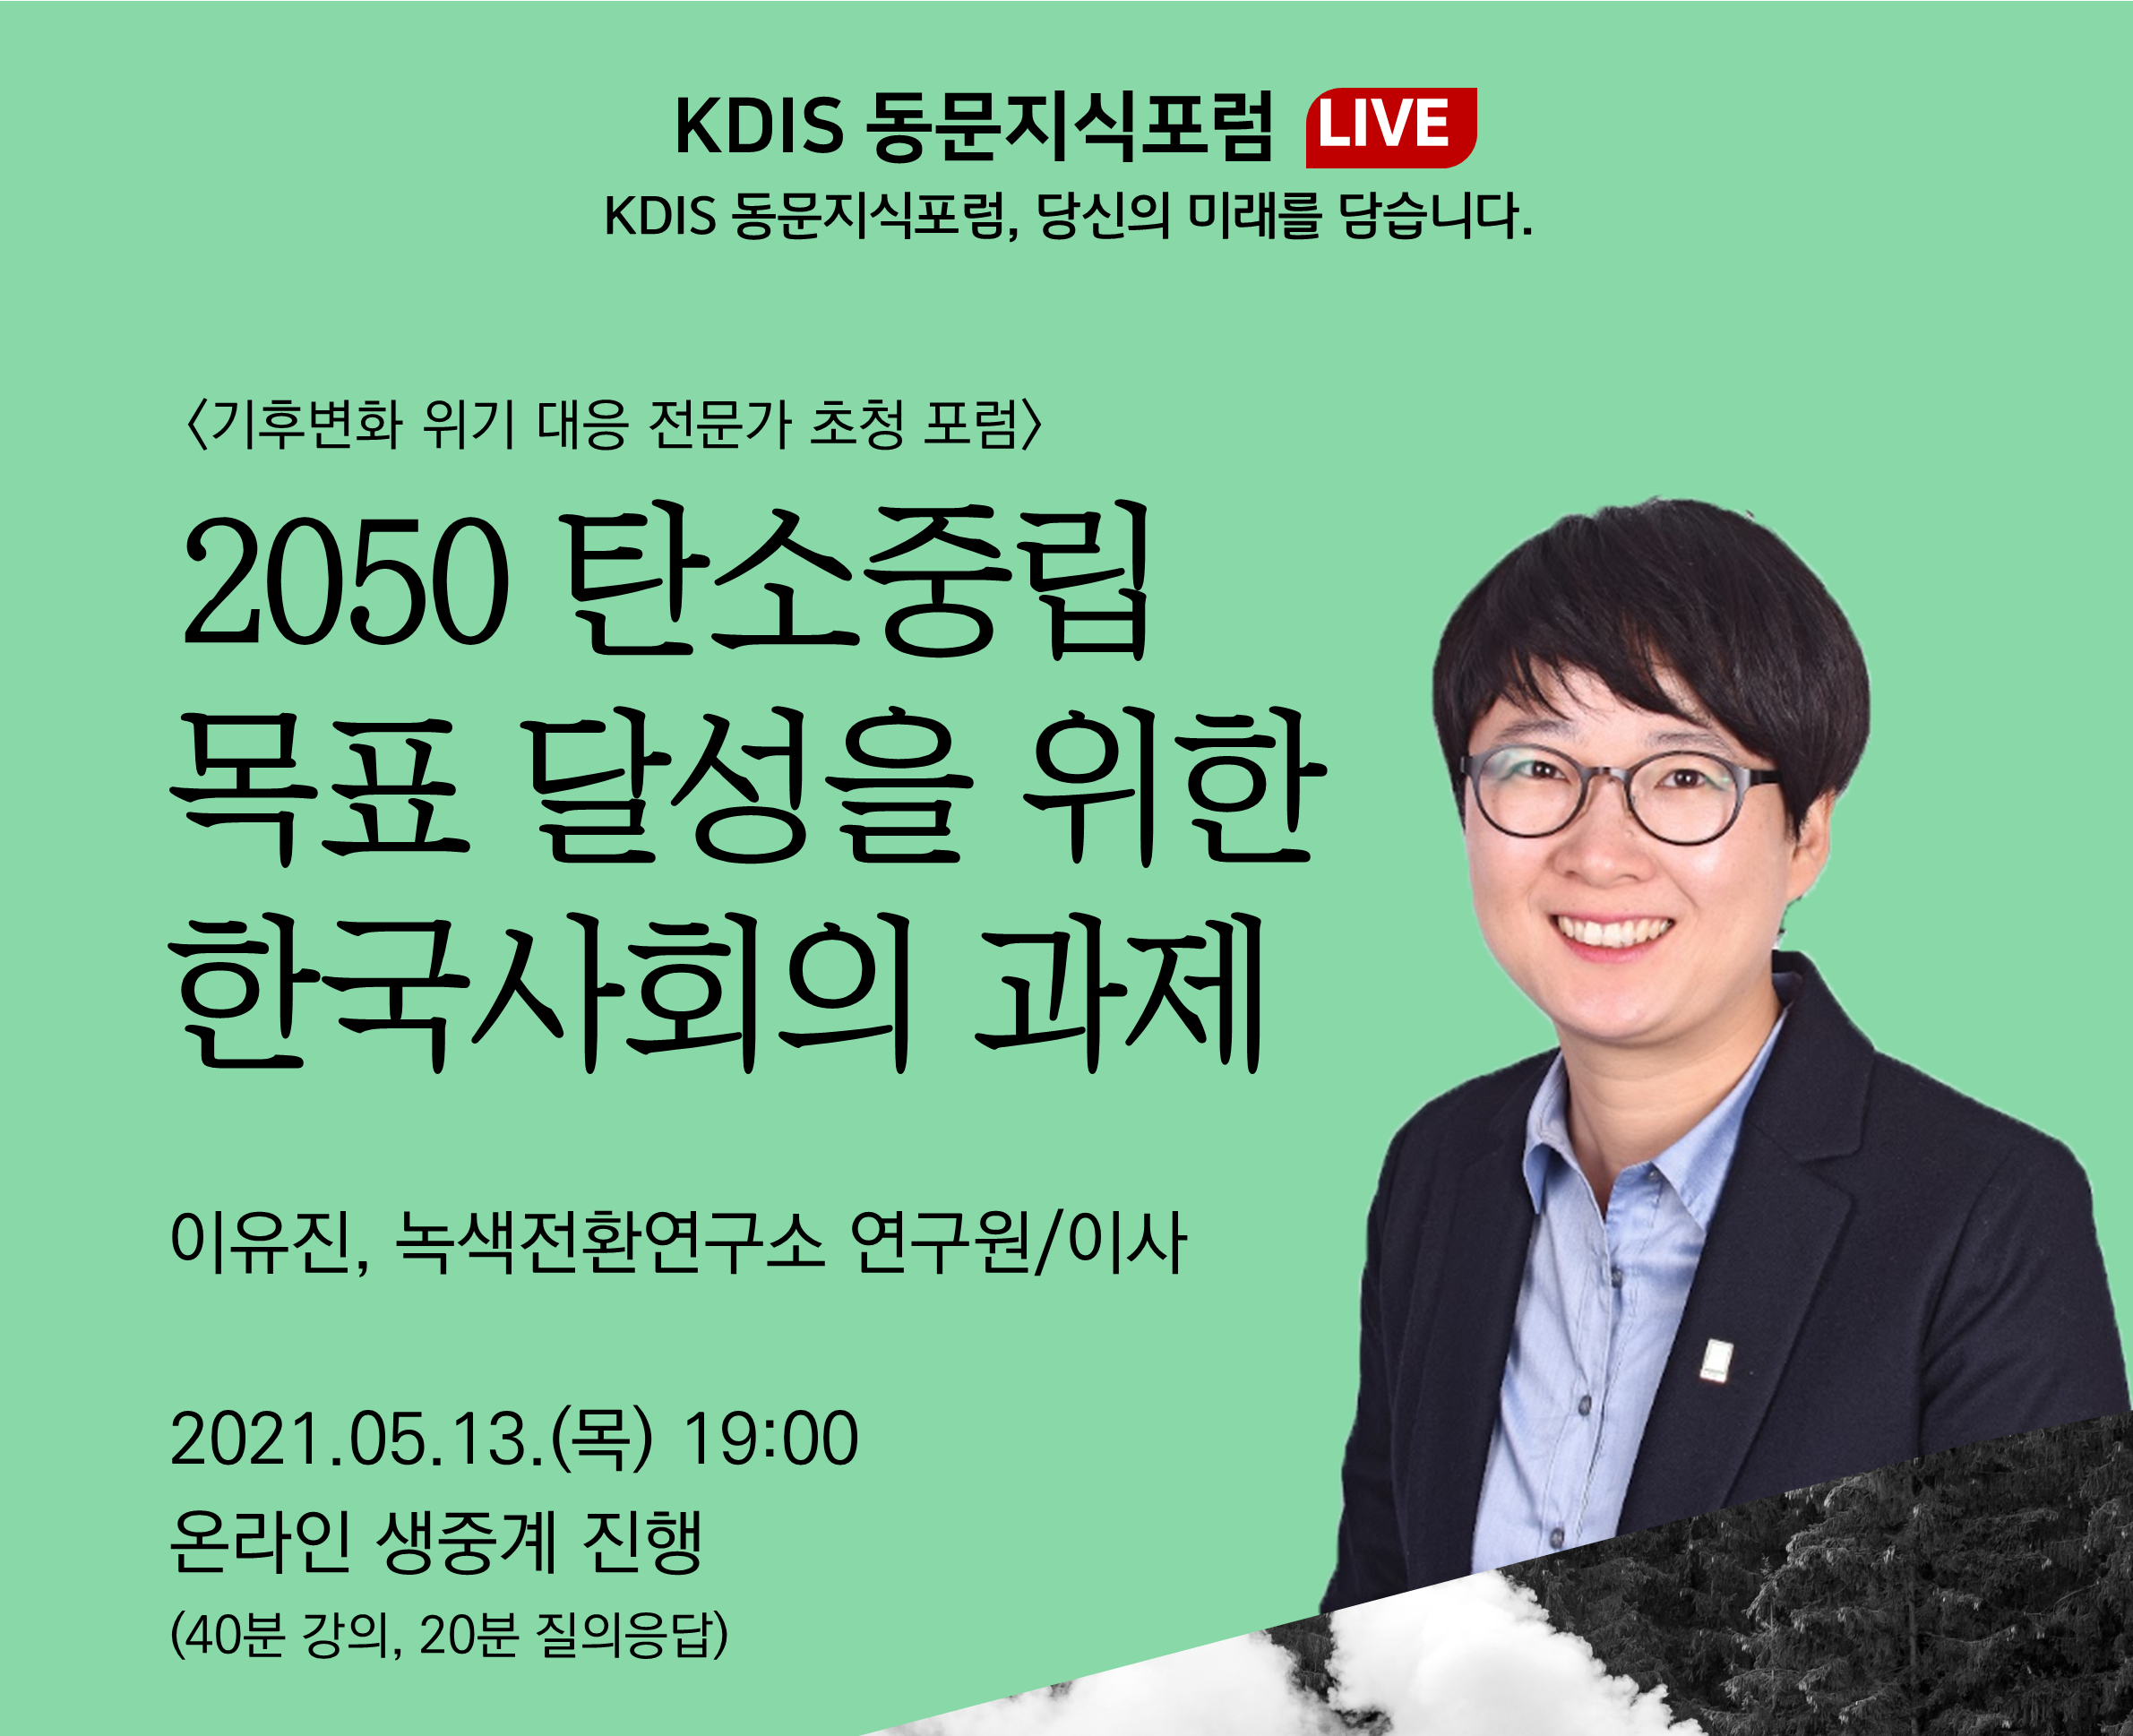 2021년도 제2회: 탄소중립을 위한 한국사회의 과제 (이유진 녹색전환연구소 연구원/이사 (2004 MPP))